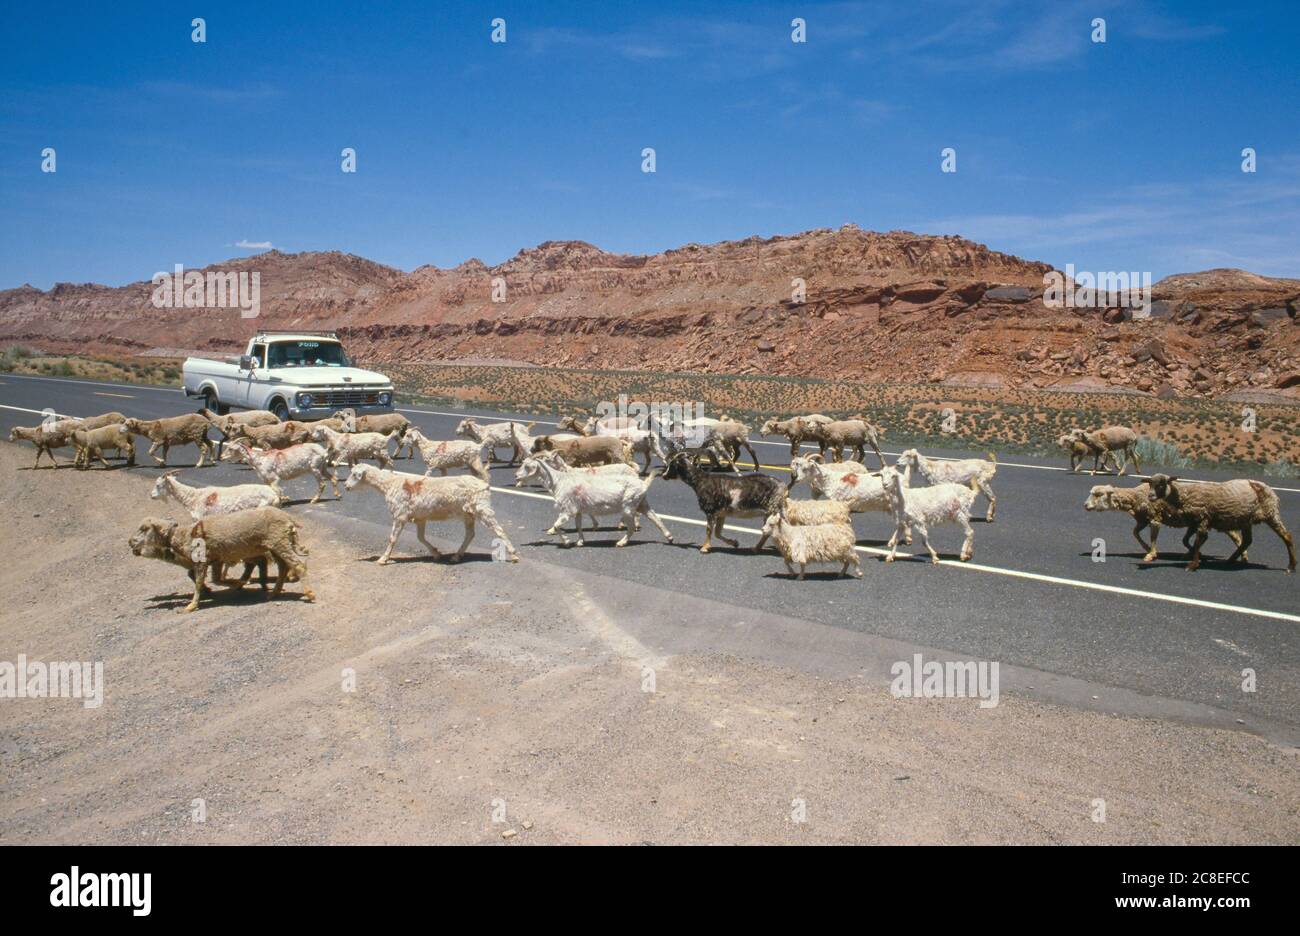 Réserve indienne Navajo, comté de Coconino, AZ / Vermillion Cliffs fond. Un troupeau de chèvres et de moutons traverse une route éloignée. Banque D'Images